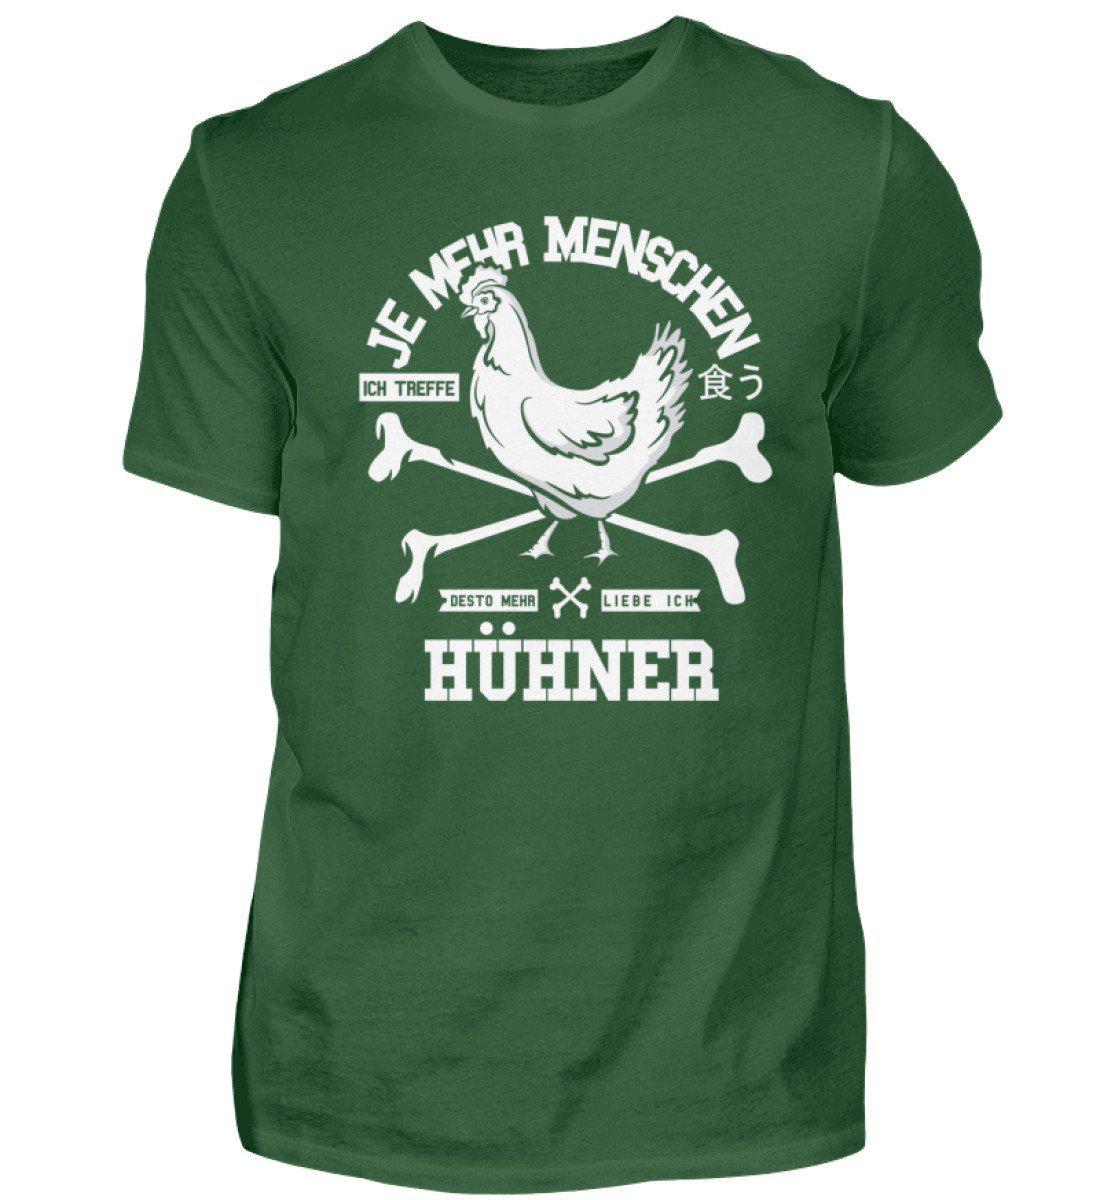 Desto mehr liebe ich Hühner · Herren T-Shirt-Herren Basic T-Shirt-Bottle Green-S-Agrarstarz